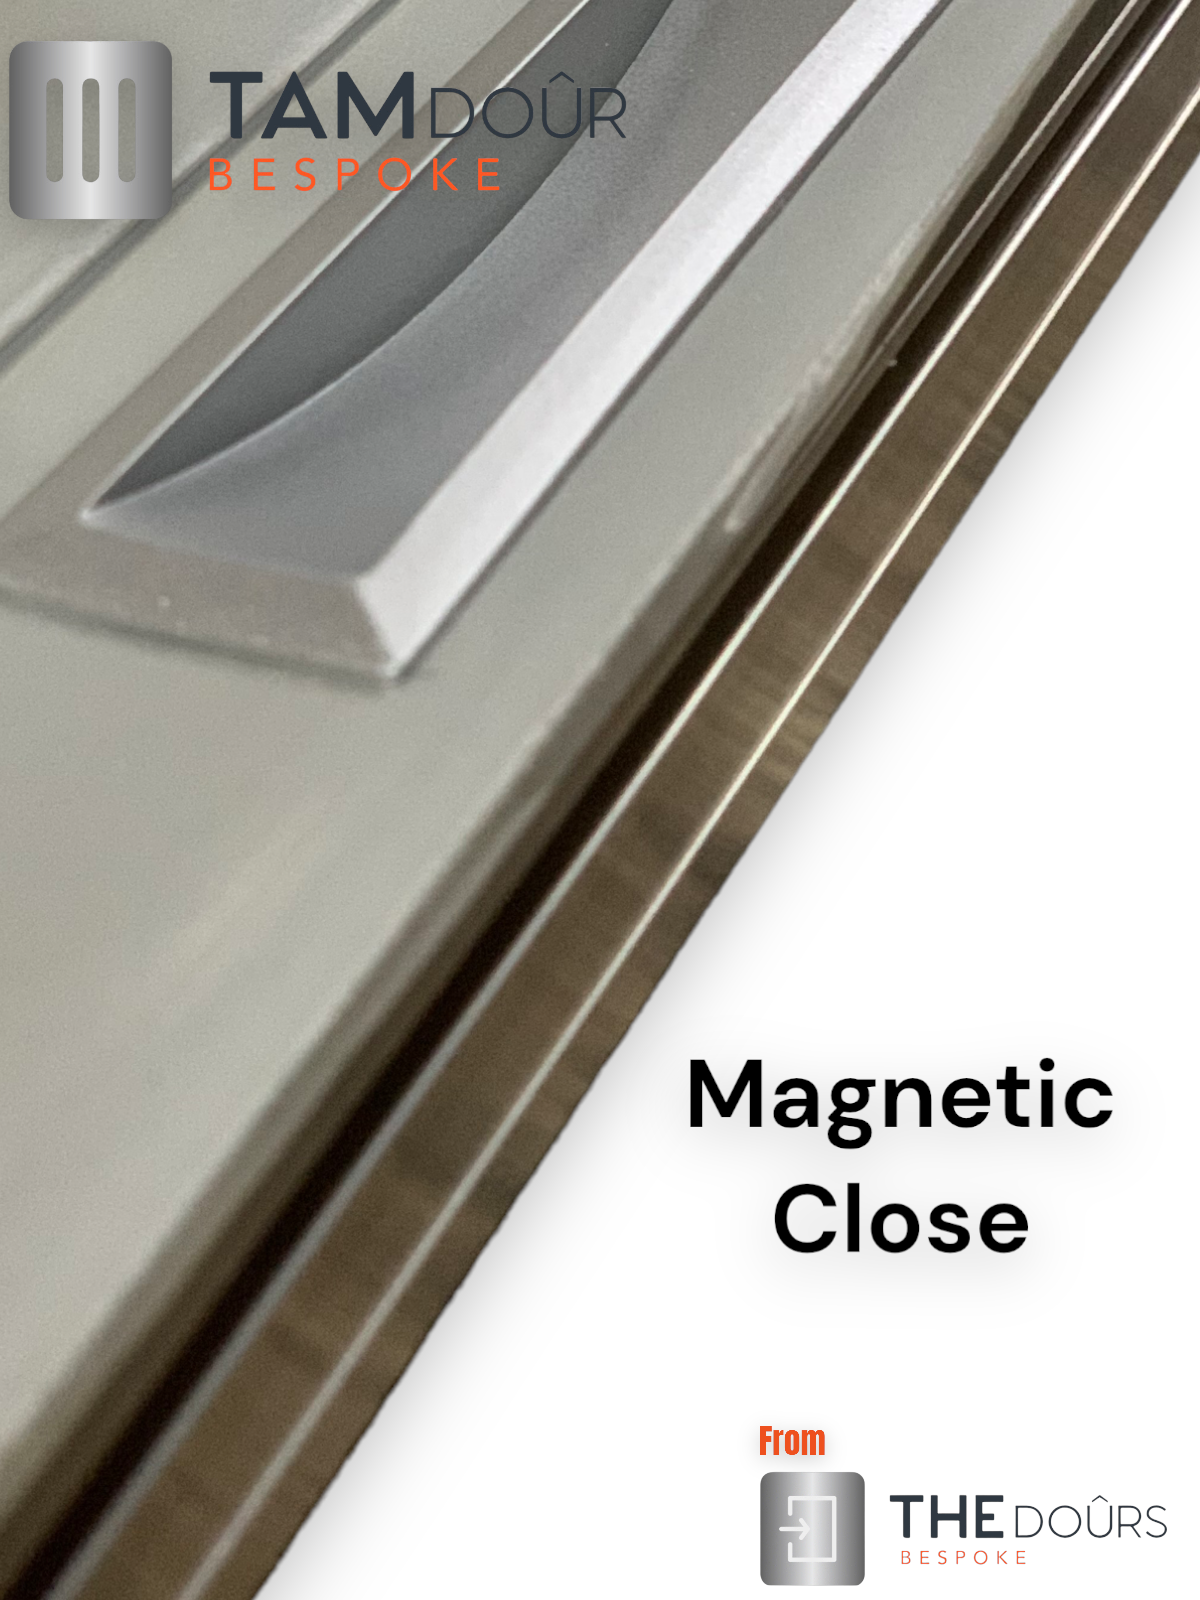 Kit de puerta Tambour Silver - MANGO NEGRO 1500 mm a 2000 mm de altura